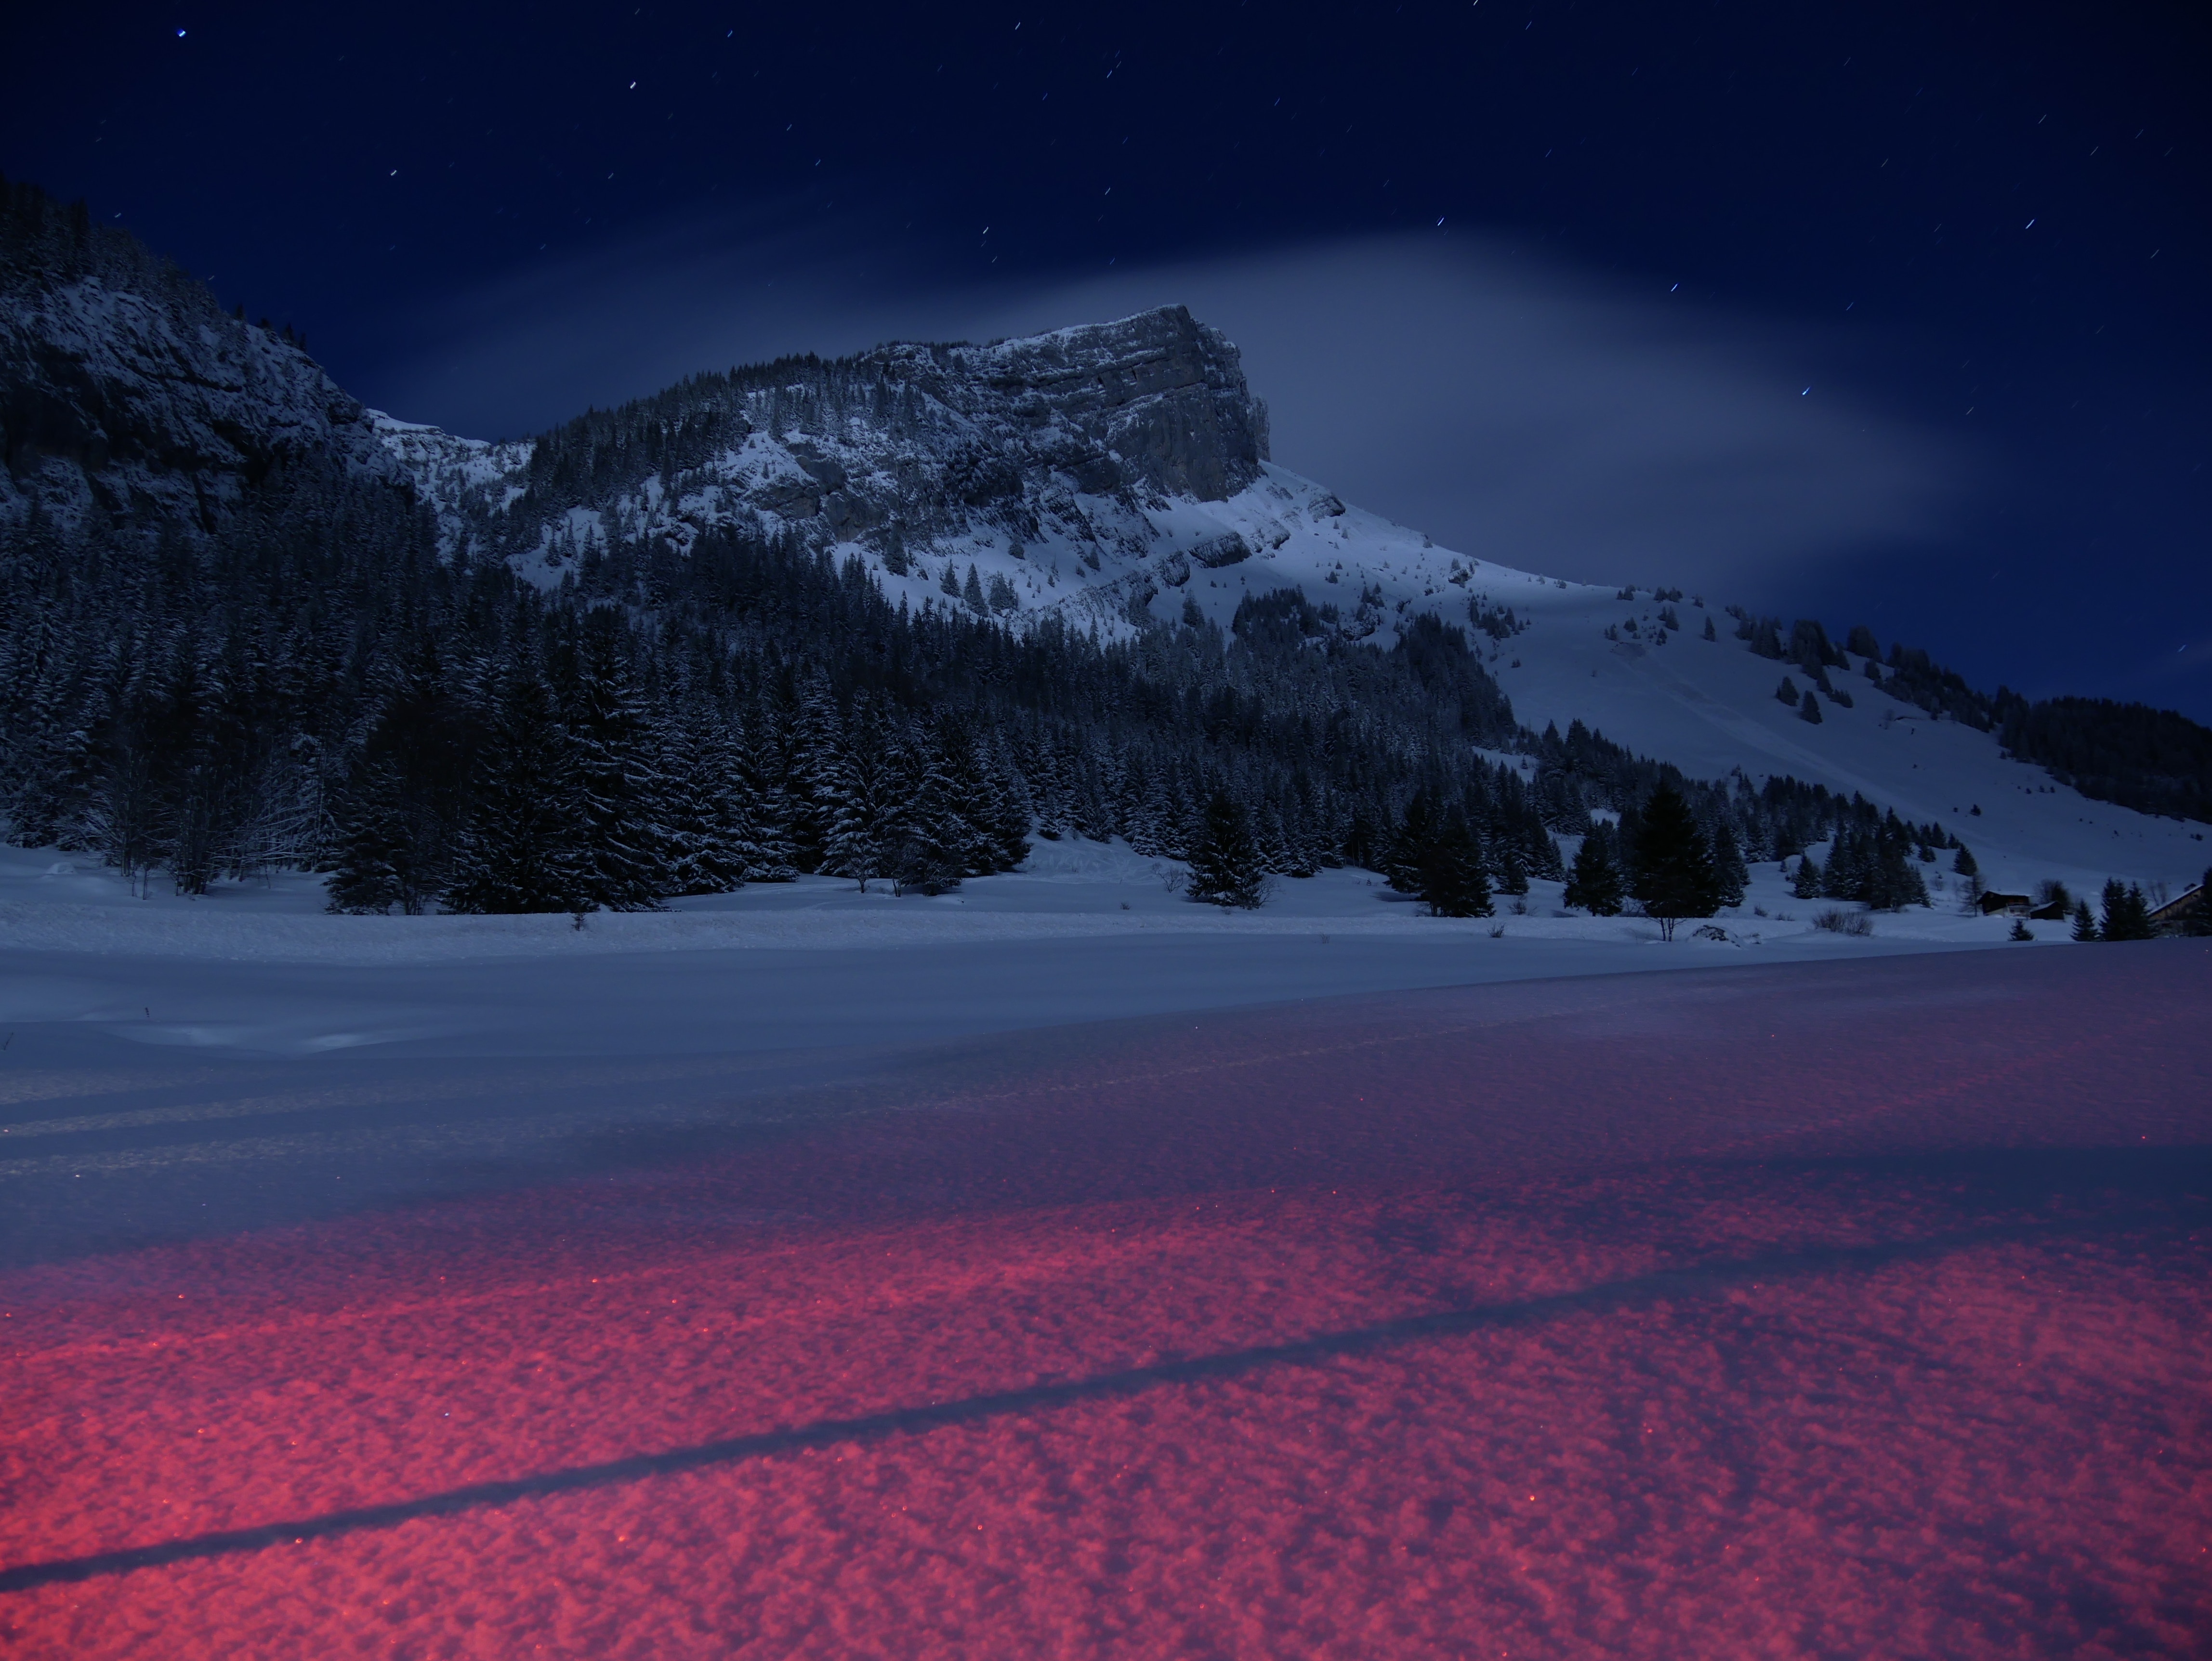 Горы зимой ночью